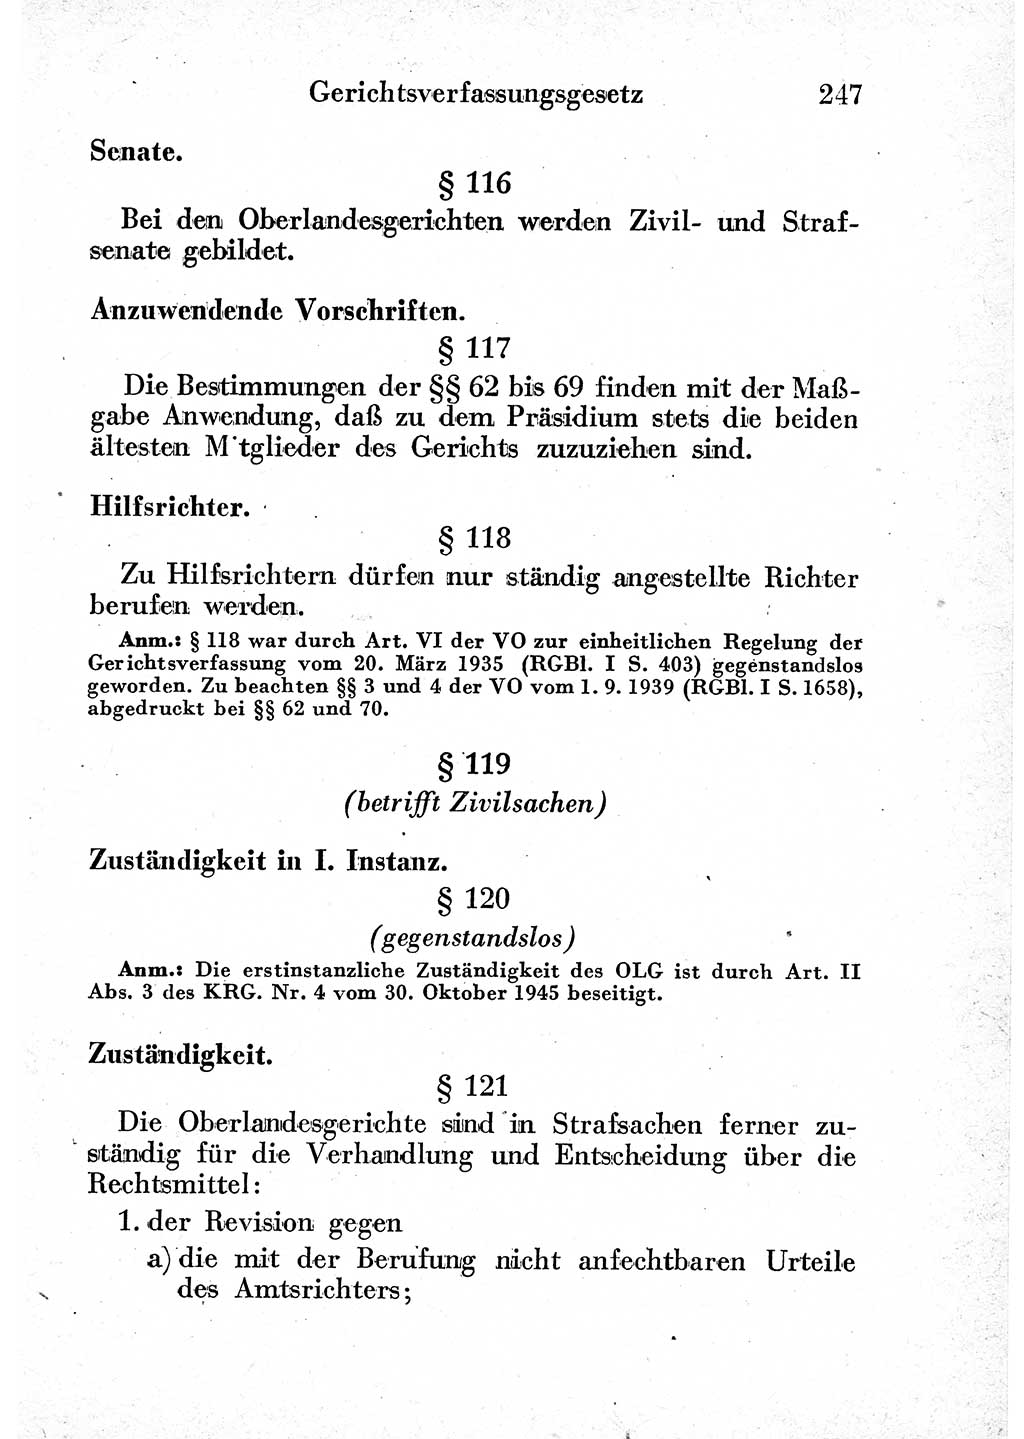 Strafprozeßordnung (StPO), Gerichtsverfassungsgesetz (GVG) und zahlreiche Nebengesetze der sowjetischen Besatzungszone (SBZ) in Deutschland 1949, Seite 247 (StPO GVG Ges. SBZ Dtl. 1949, S. 247)